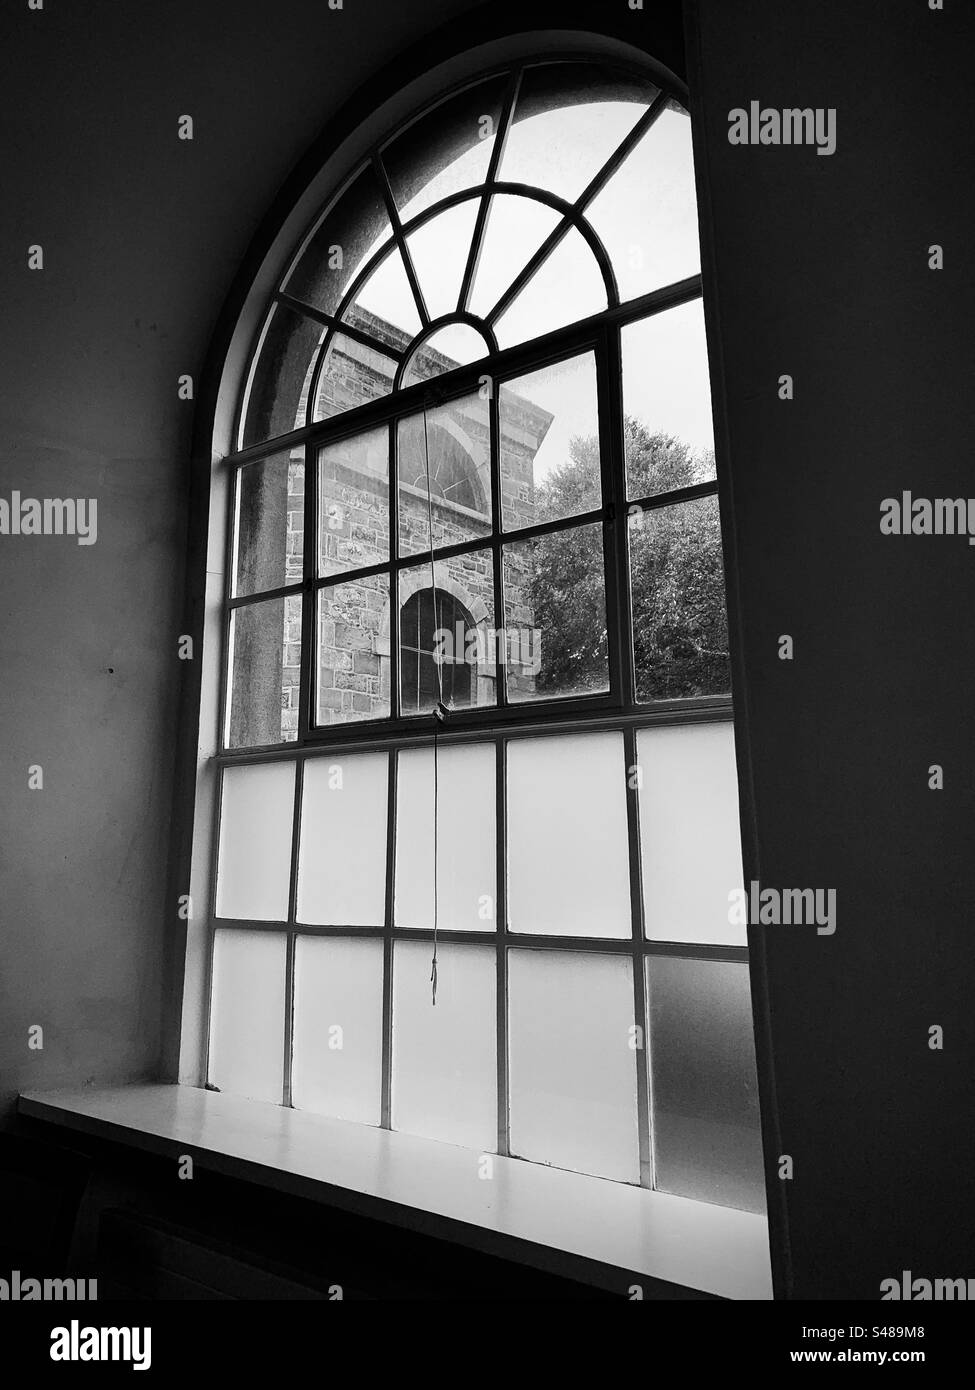 Visualizzare attraverso una finestra in bianco e nero Foto Stock